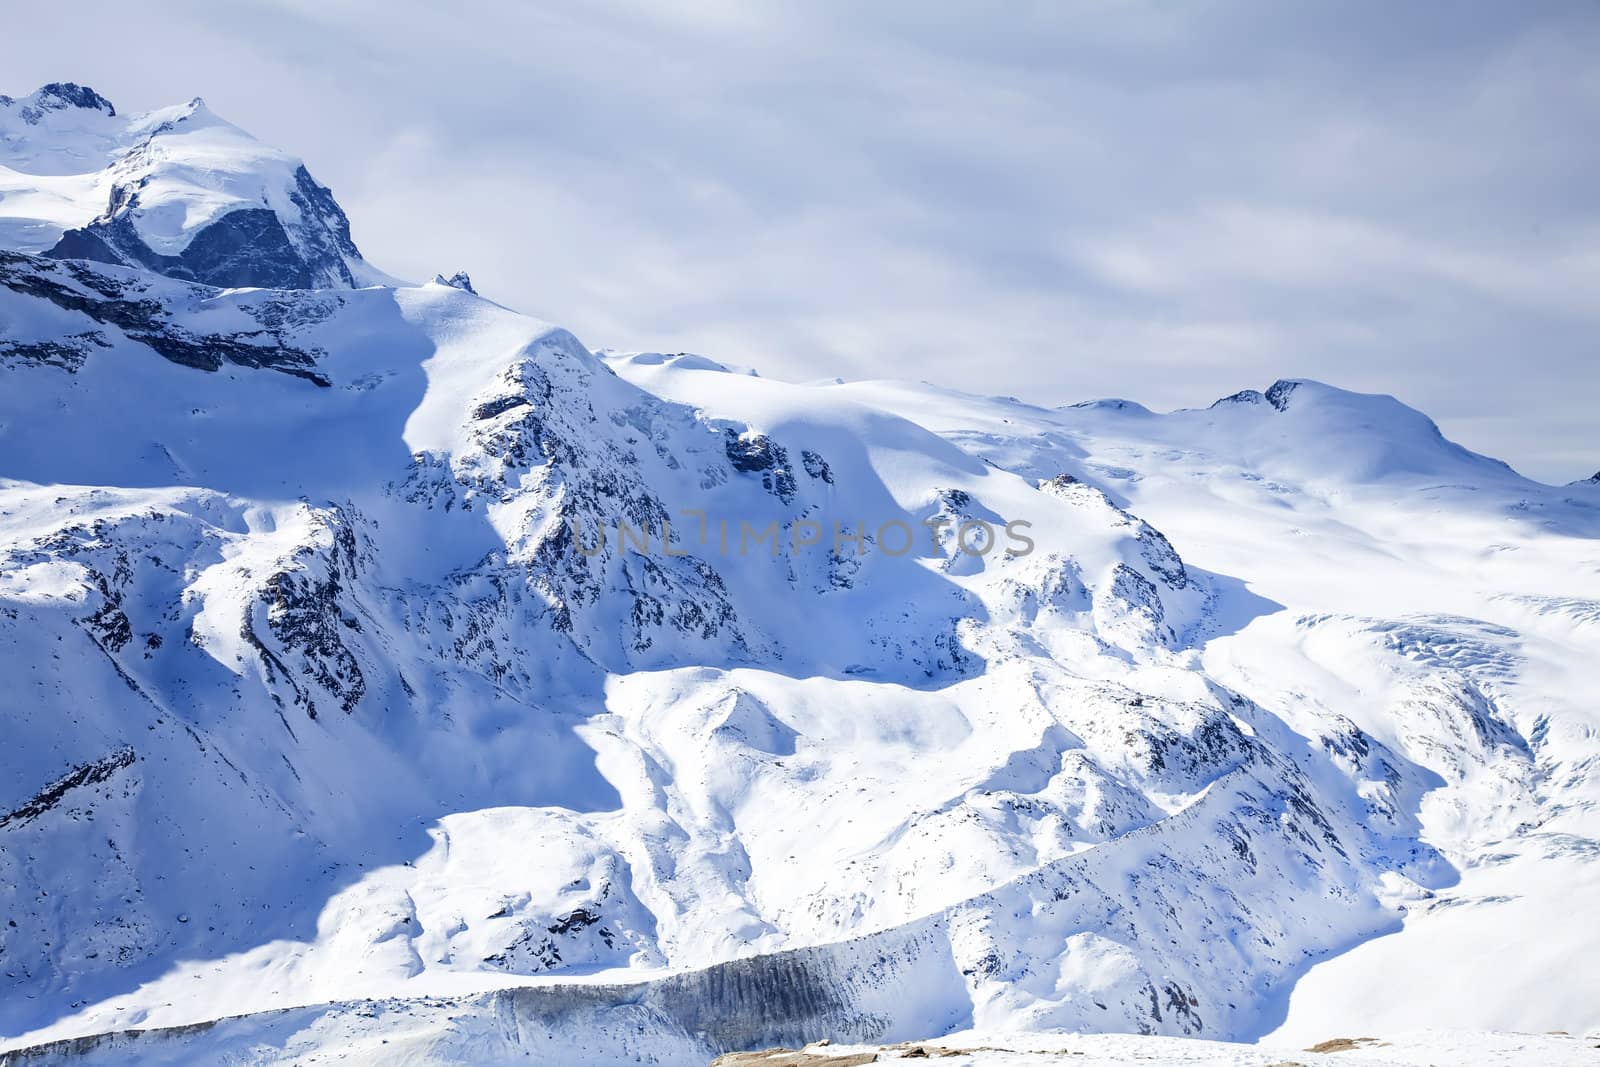 Beautiful winter snow landscape in Switzerland by RawGroup